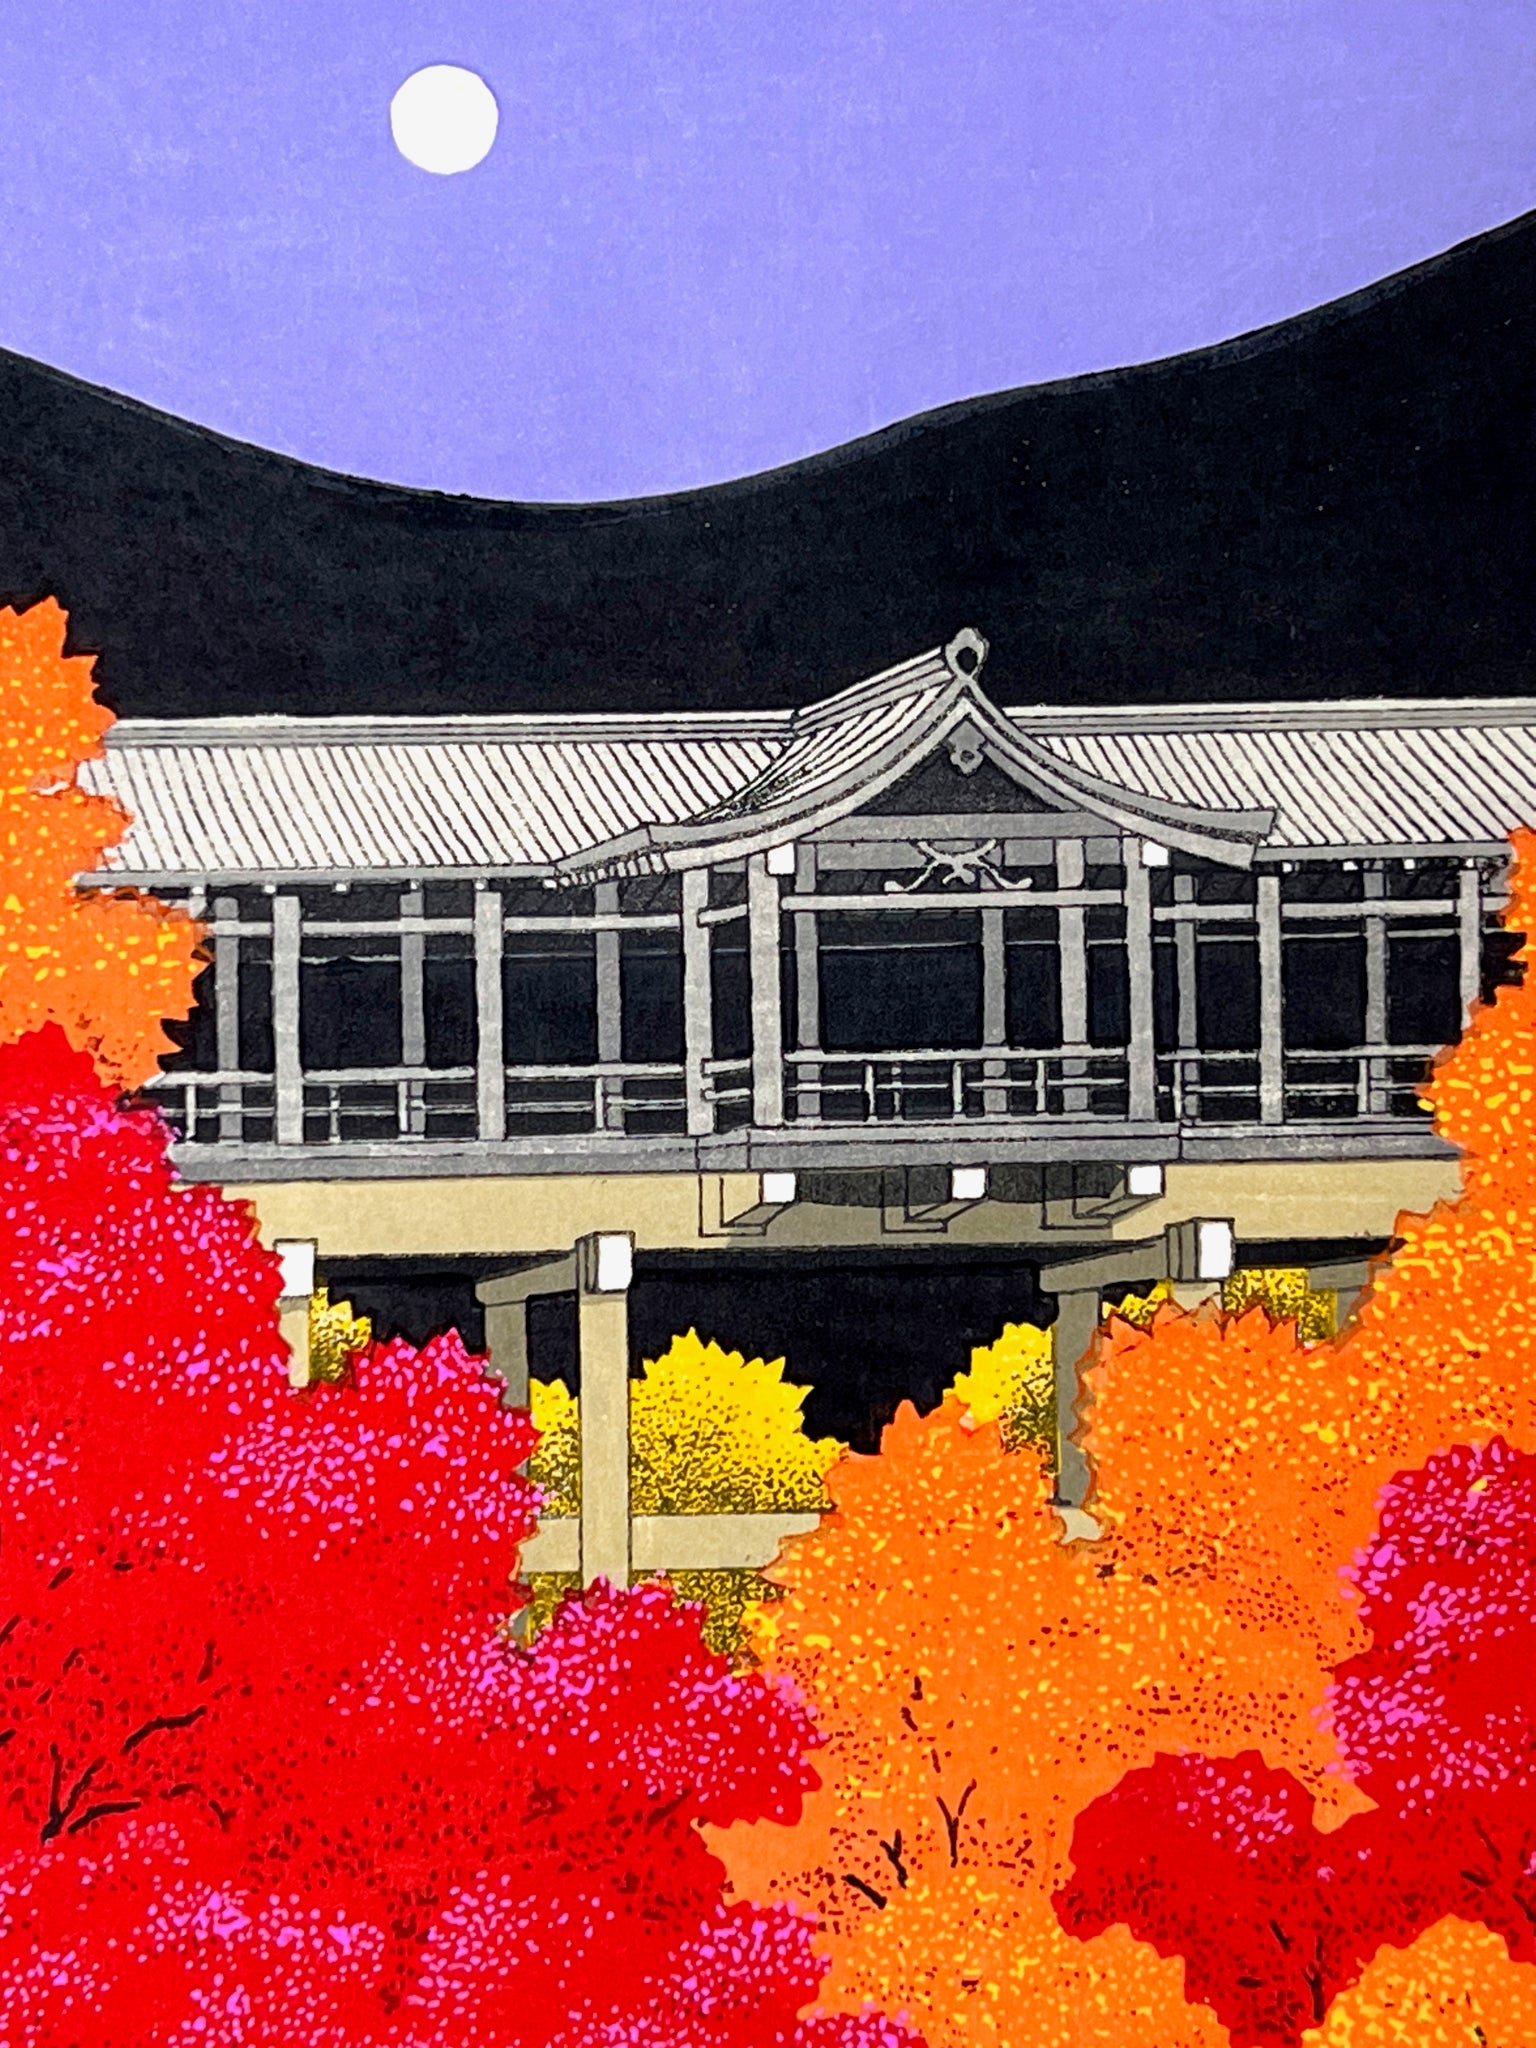 Estampe Japonaise contemporaine de Teruhide Kato Temple Tofuku derriere les érables rouges et oranges à l'automne, la pleine lune dans un ciel violet, le temple